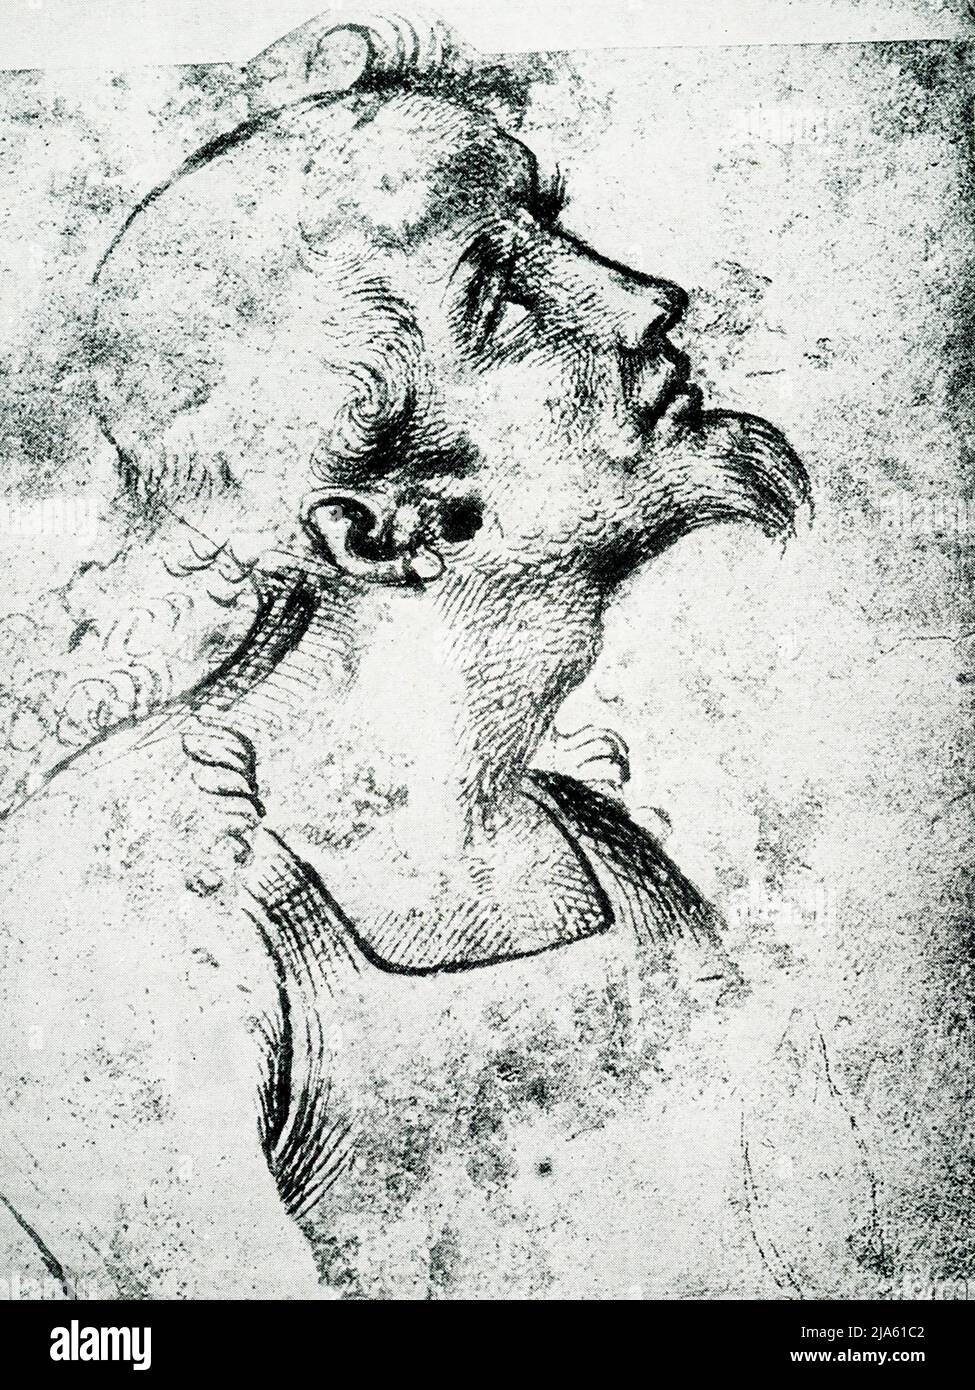 Questo disegno, Head in Profile, di Raffaello (1483-1520) è all'Accademia di Belle Arti di Venezia. Il volto rovesciato può essere la testa di un santo. Raffaello Sanzio da Urbino fu pittore e architetto italiano dell'Alto Rinascimento. Il suo lavoro è ammirato per la sua chiarezza di forma, la facilità di composizione, e la realizzazione visiva dell'ideale neoplatonico della grandezza umana. Foto Stock